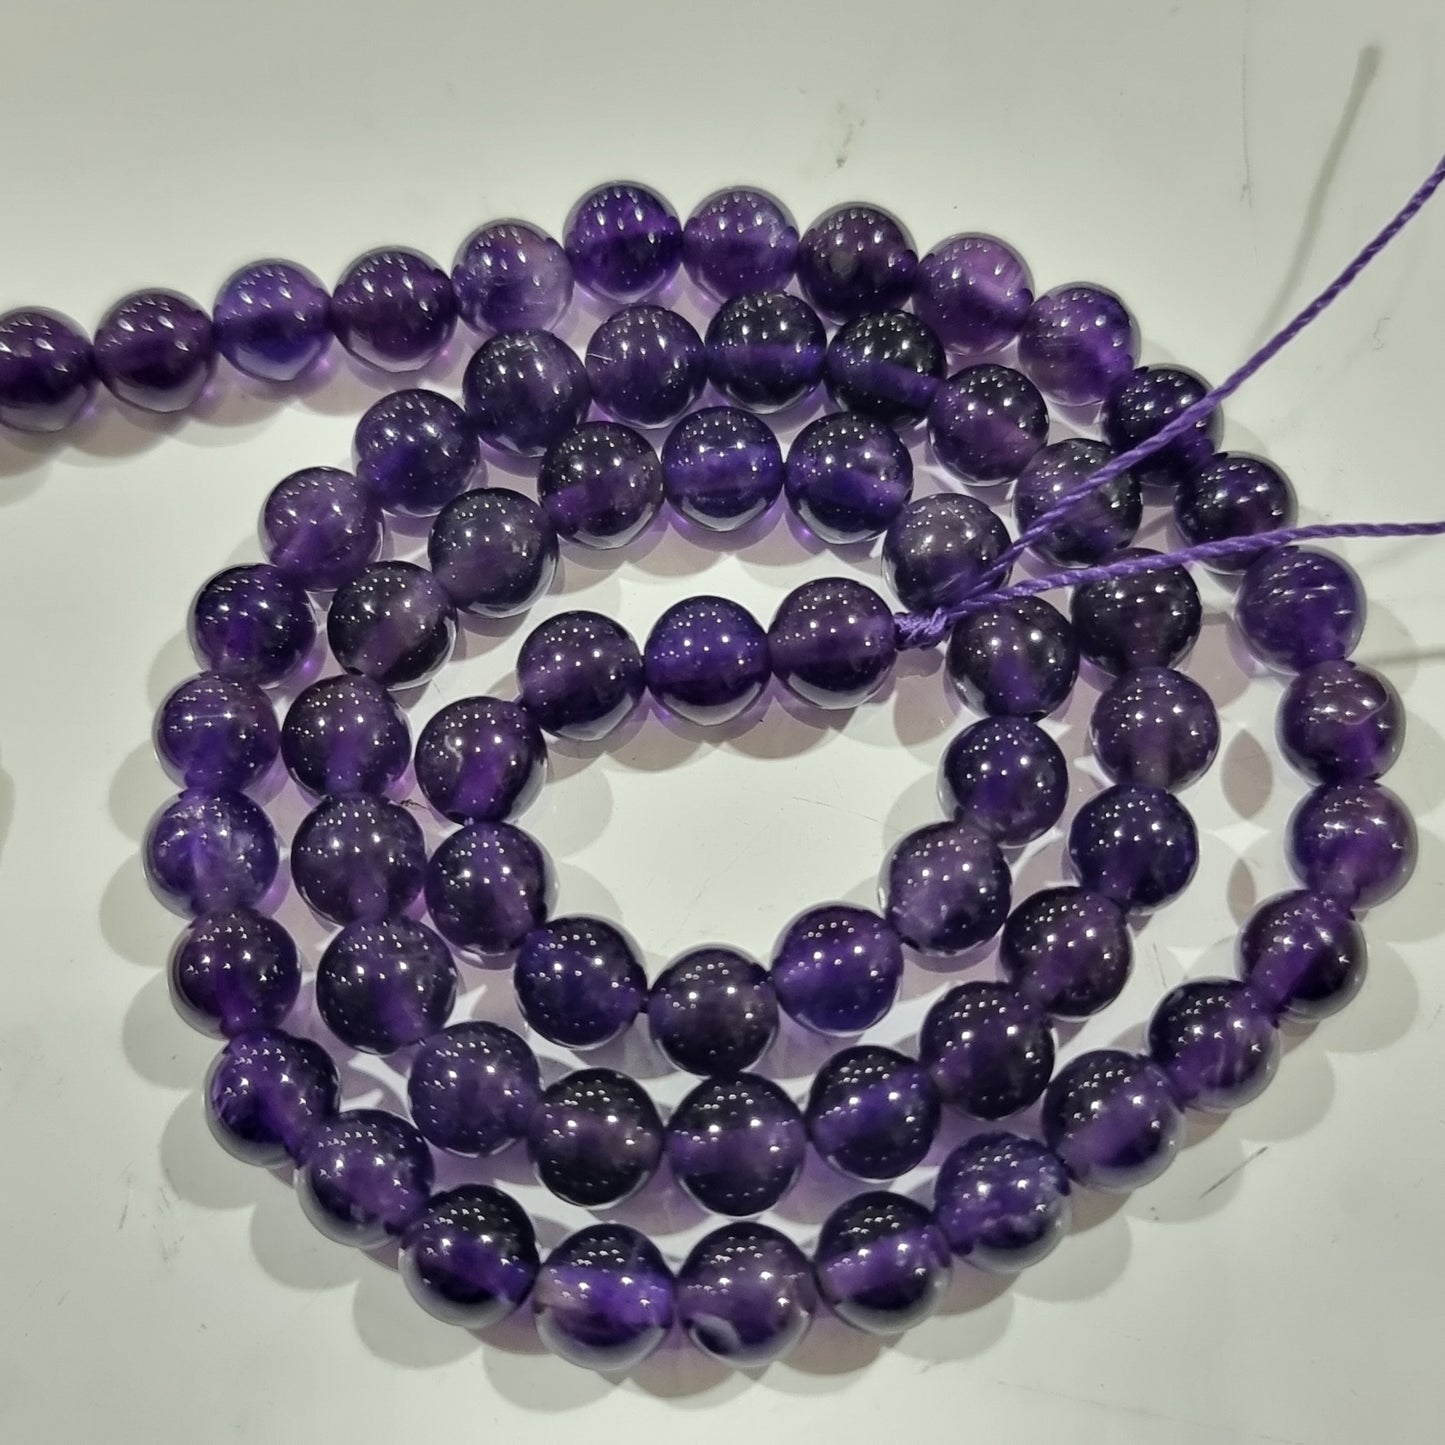 5mm Amethyst Round Gemstone Beads